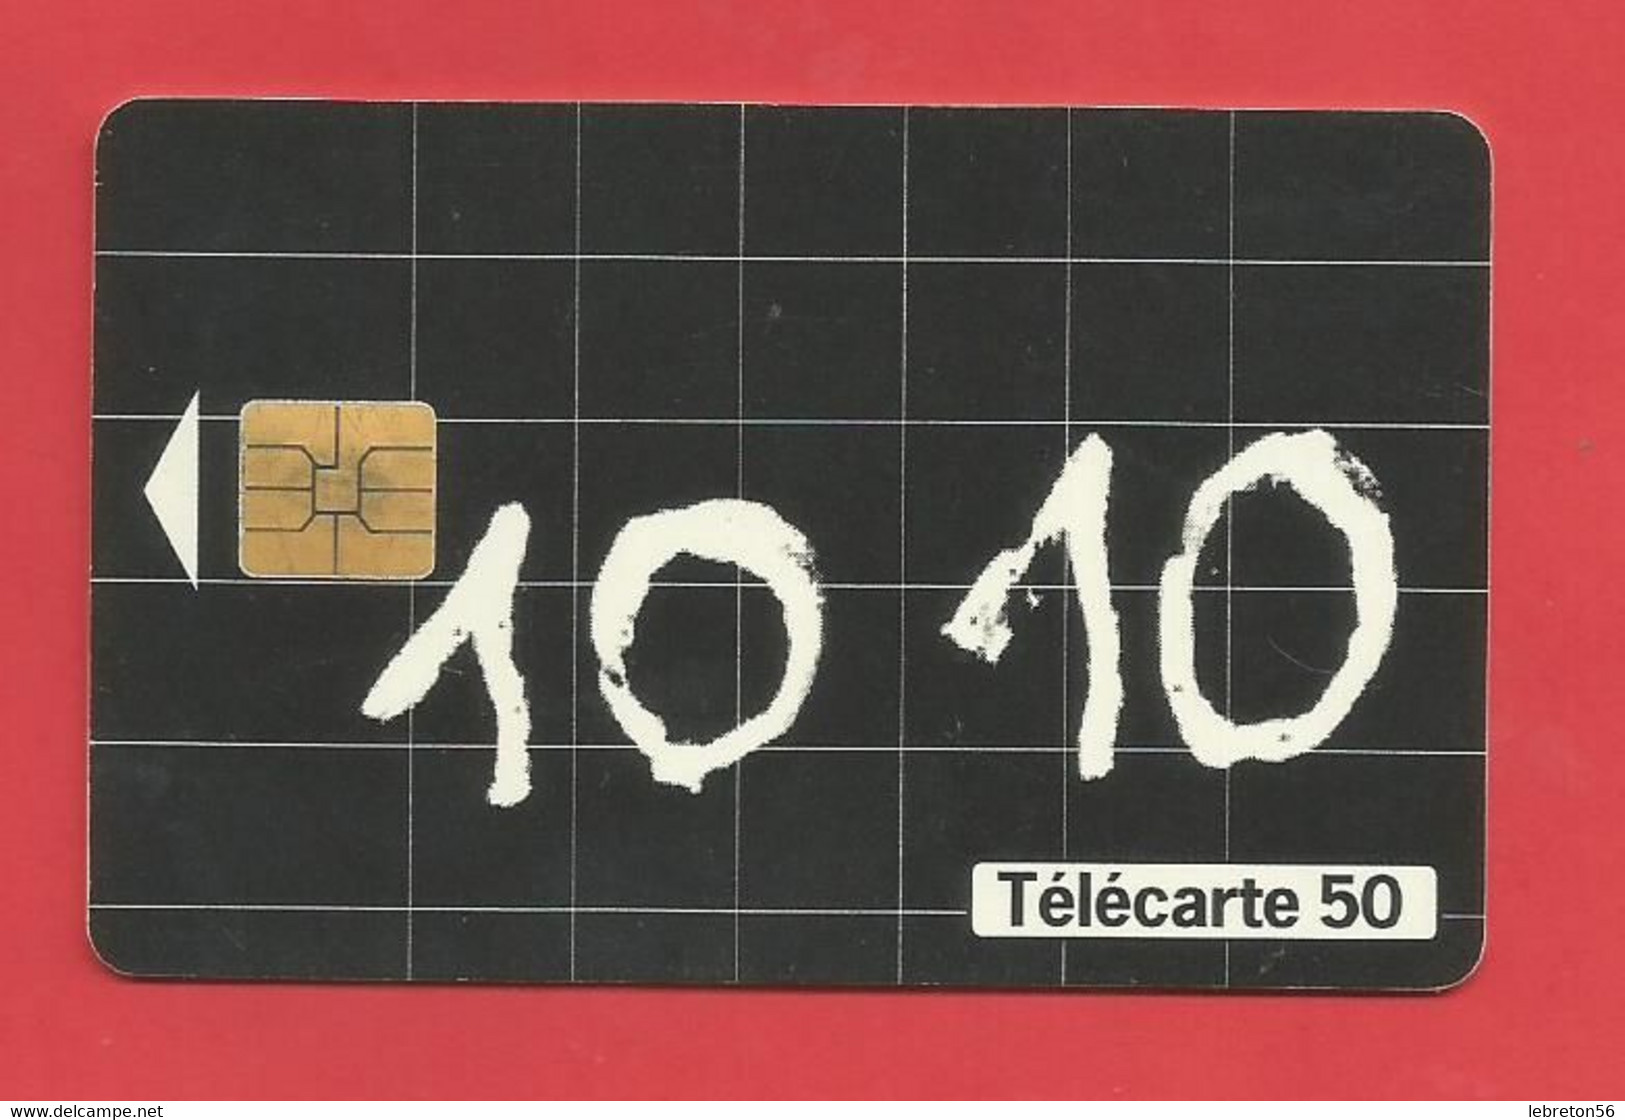 TELECARTE 50  U TIRAGE 1000 000 EX. France Télécom Appelez Le 10 10*---- X 2 Scan - Telecom Operators